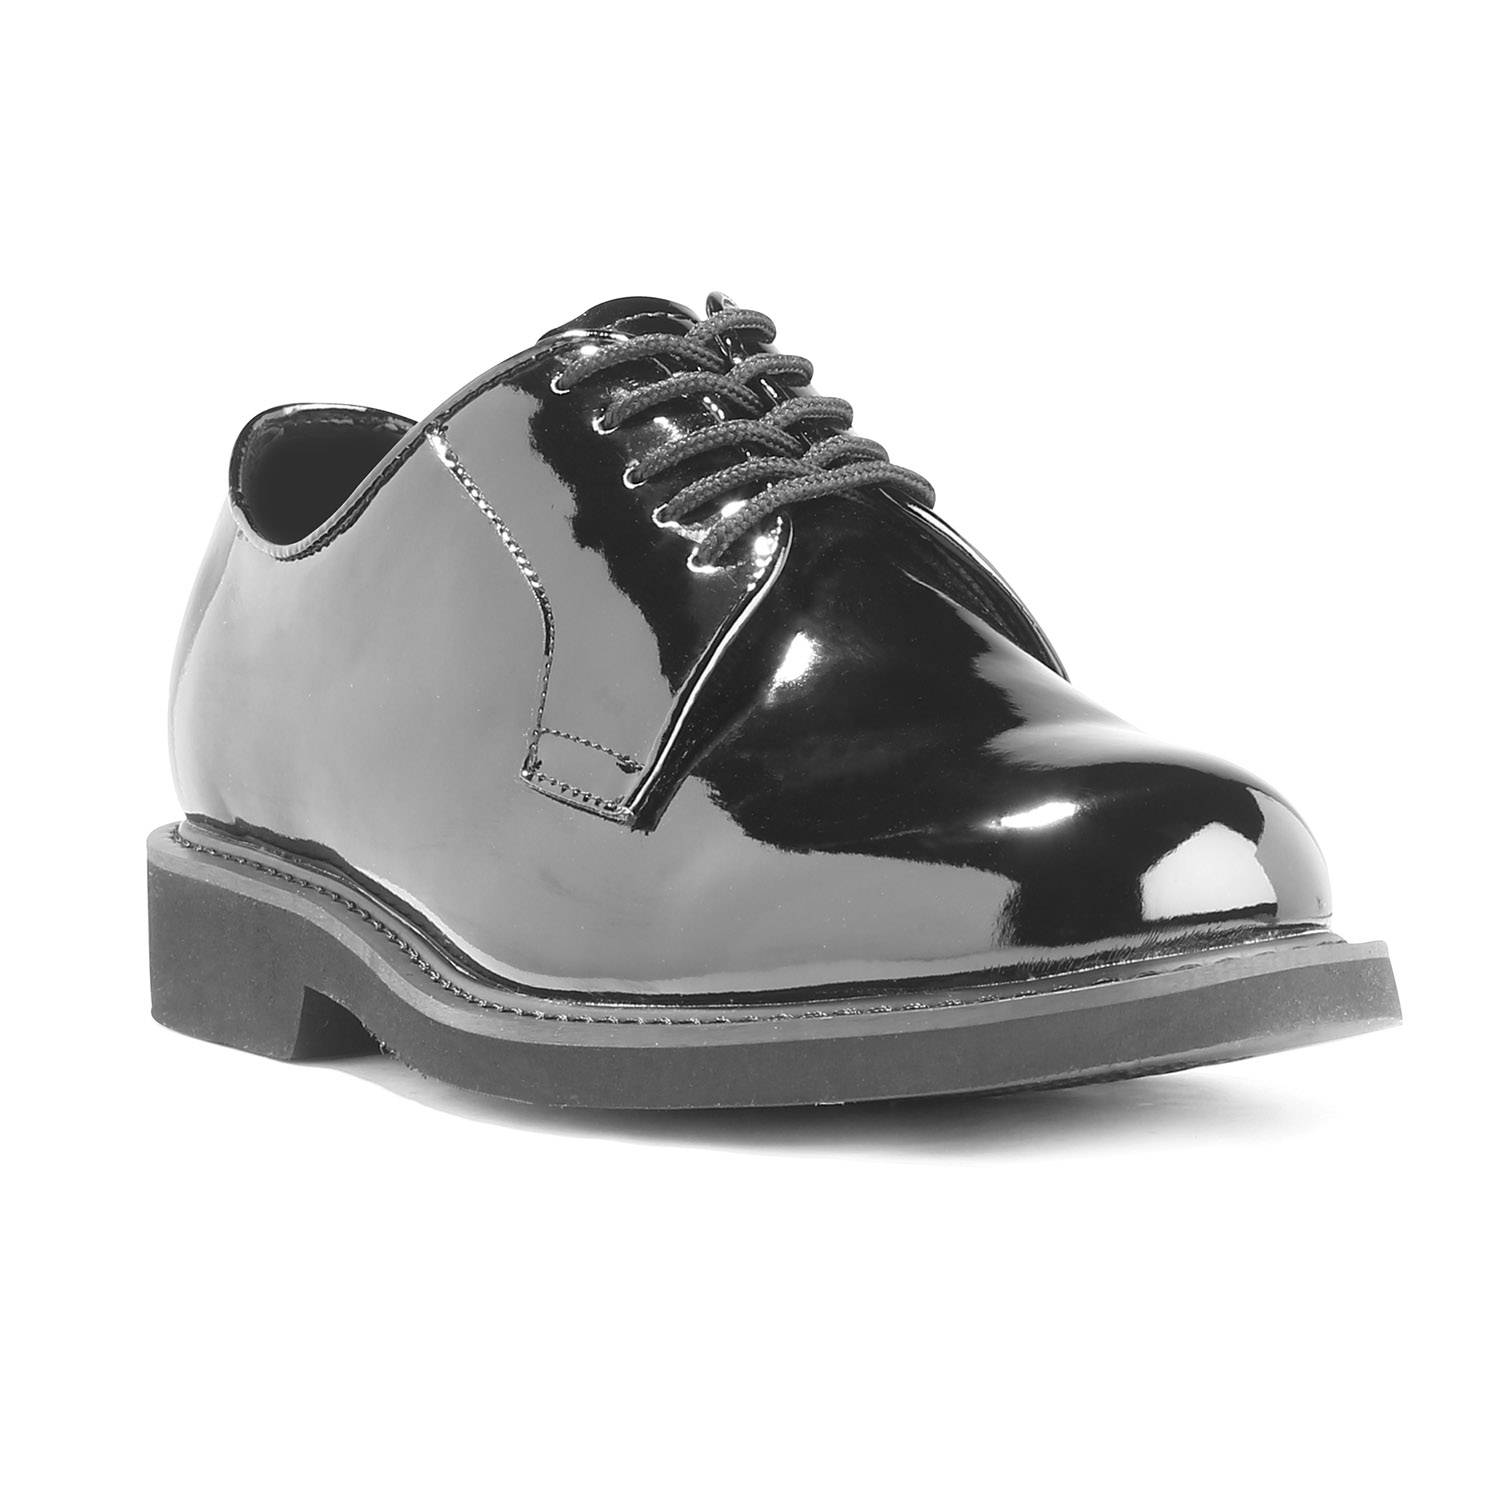 LawPro Hi-Gloss Oxfords | Uniform Shoes 